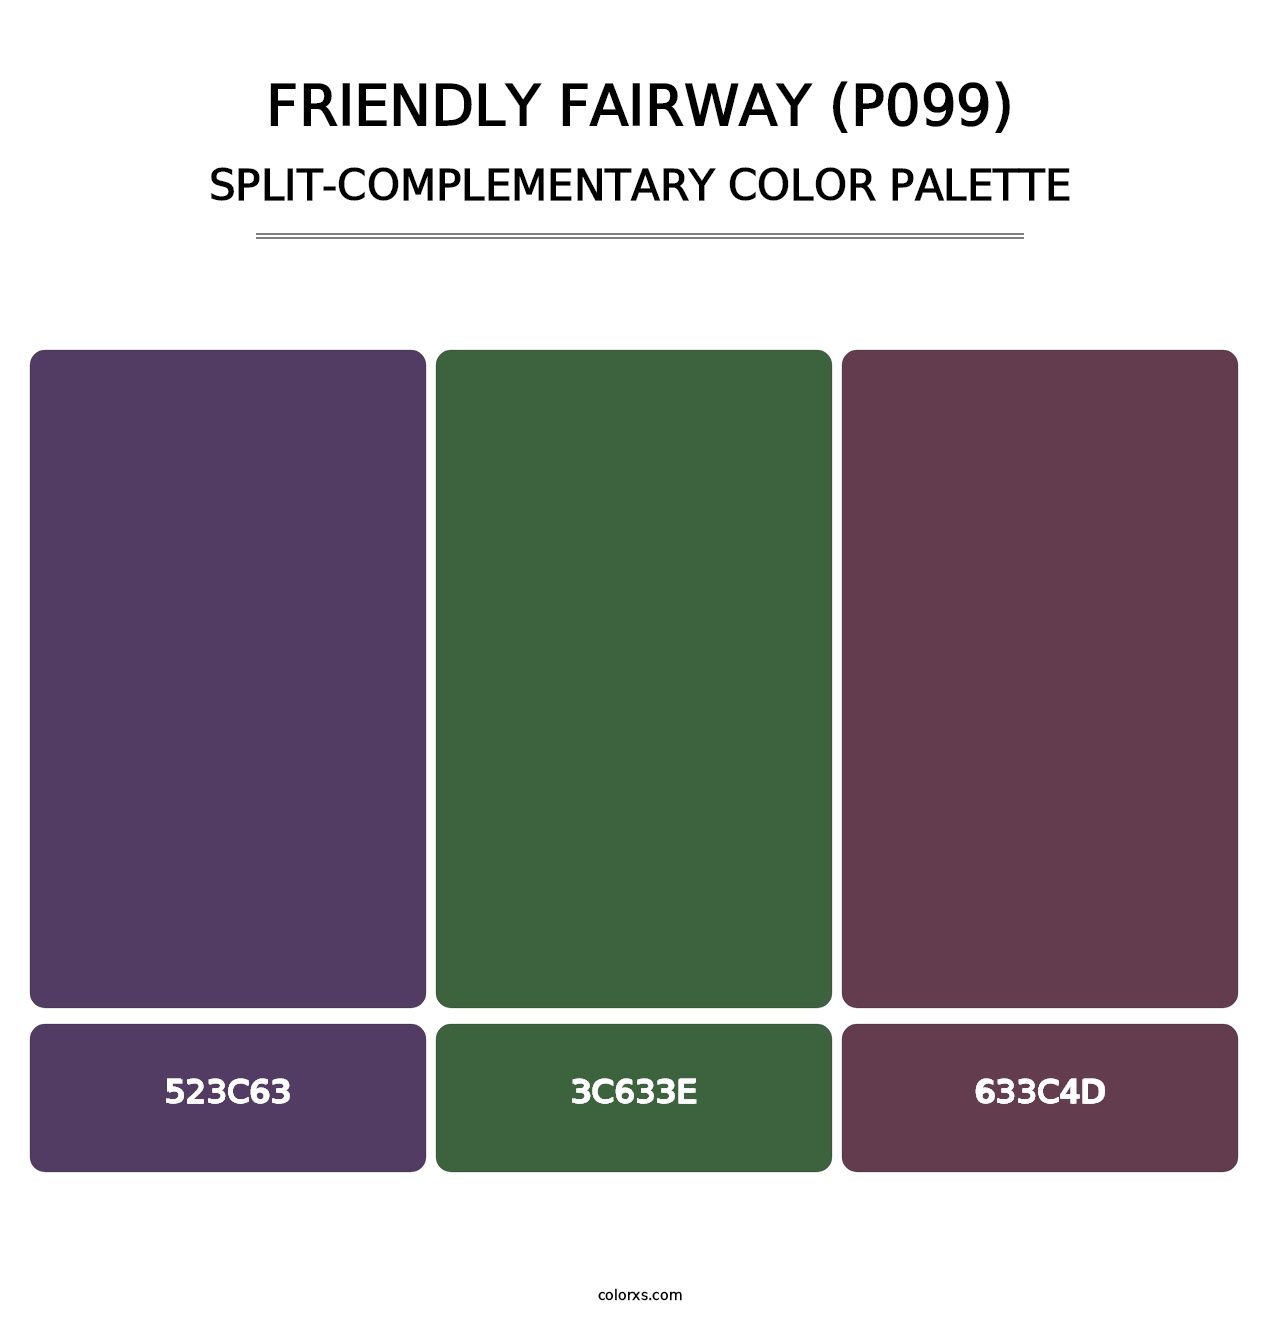 Friendly Fairway (P099) - Split-Complementary Color Palette